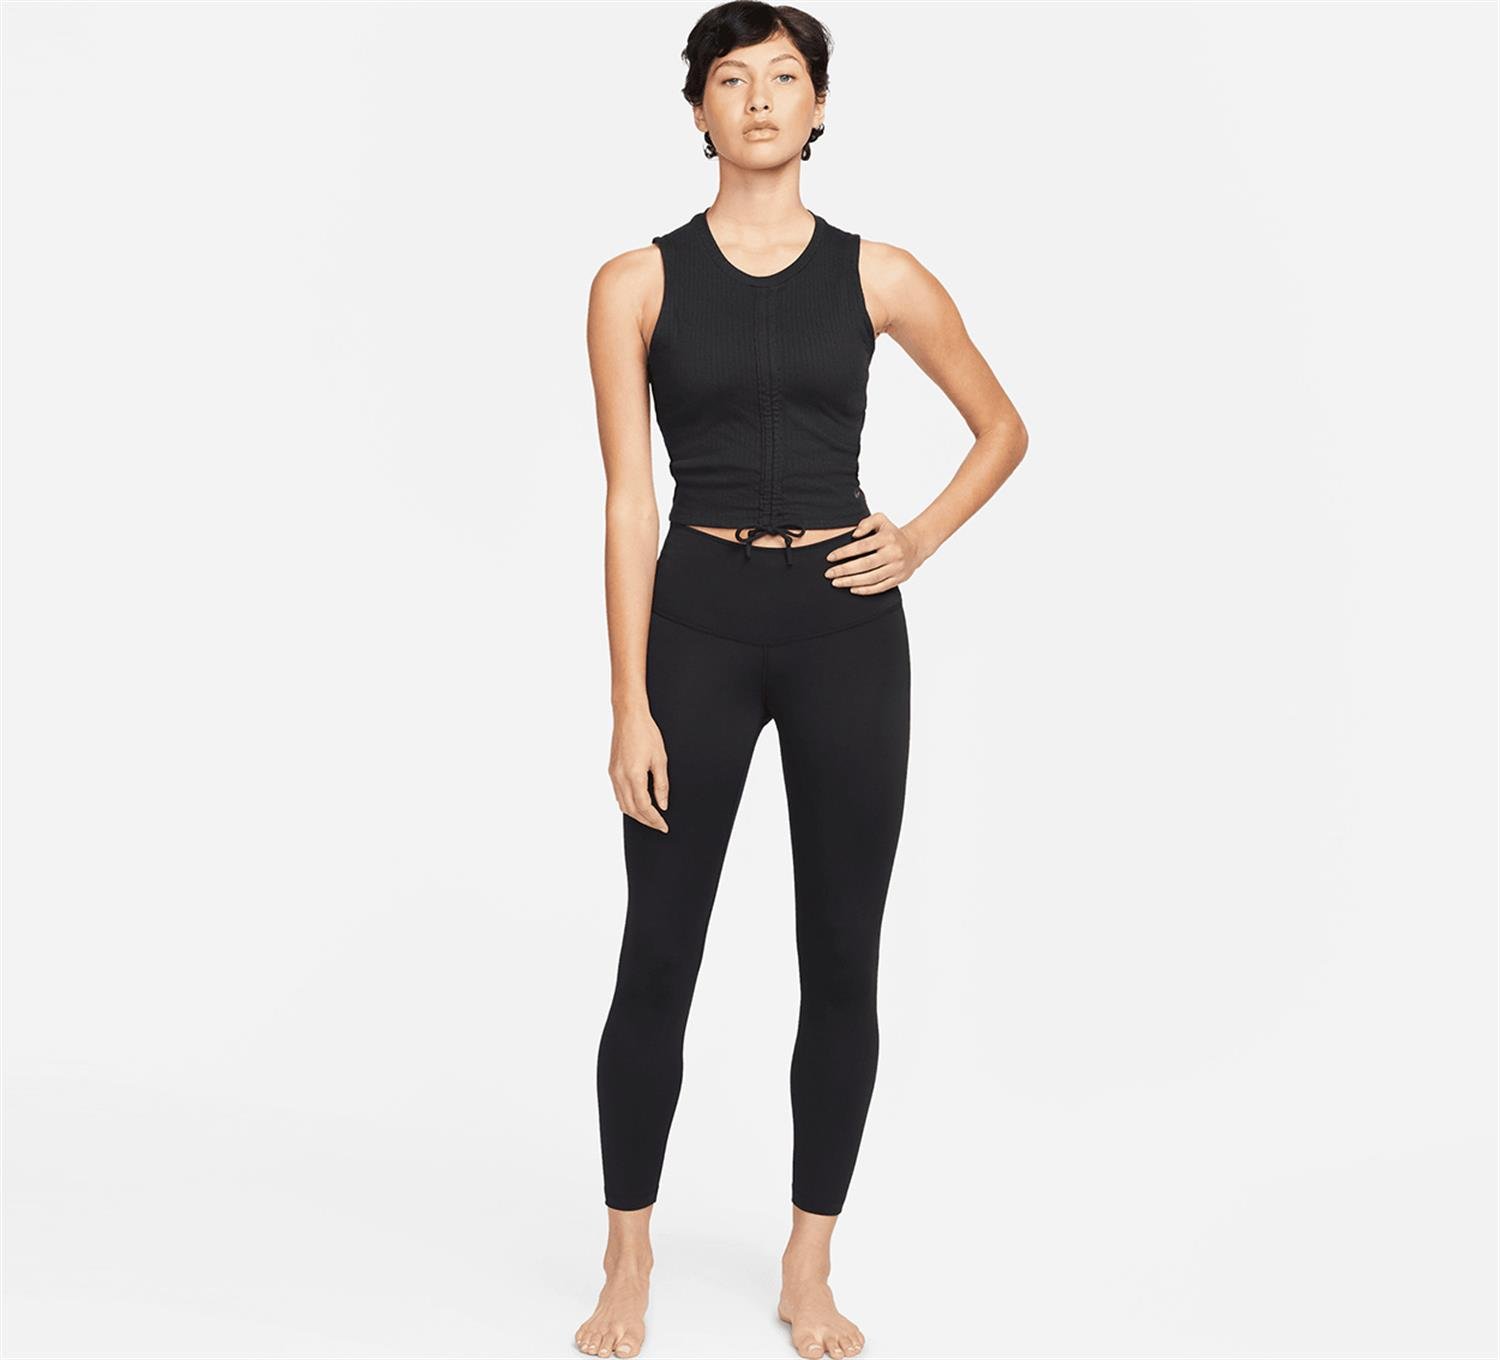 Nike Yoga Dri-fit Siyah Erkek Tayt Şort Fiyatları, Özellikleri ve Yorumları